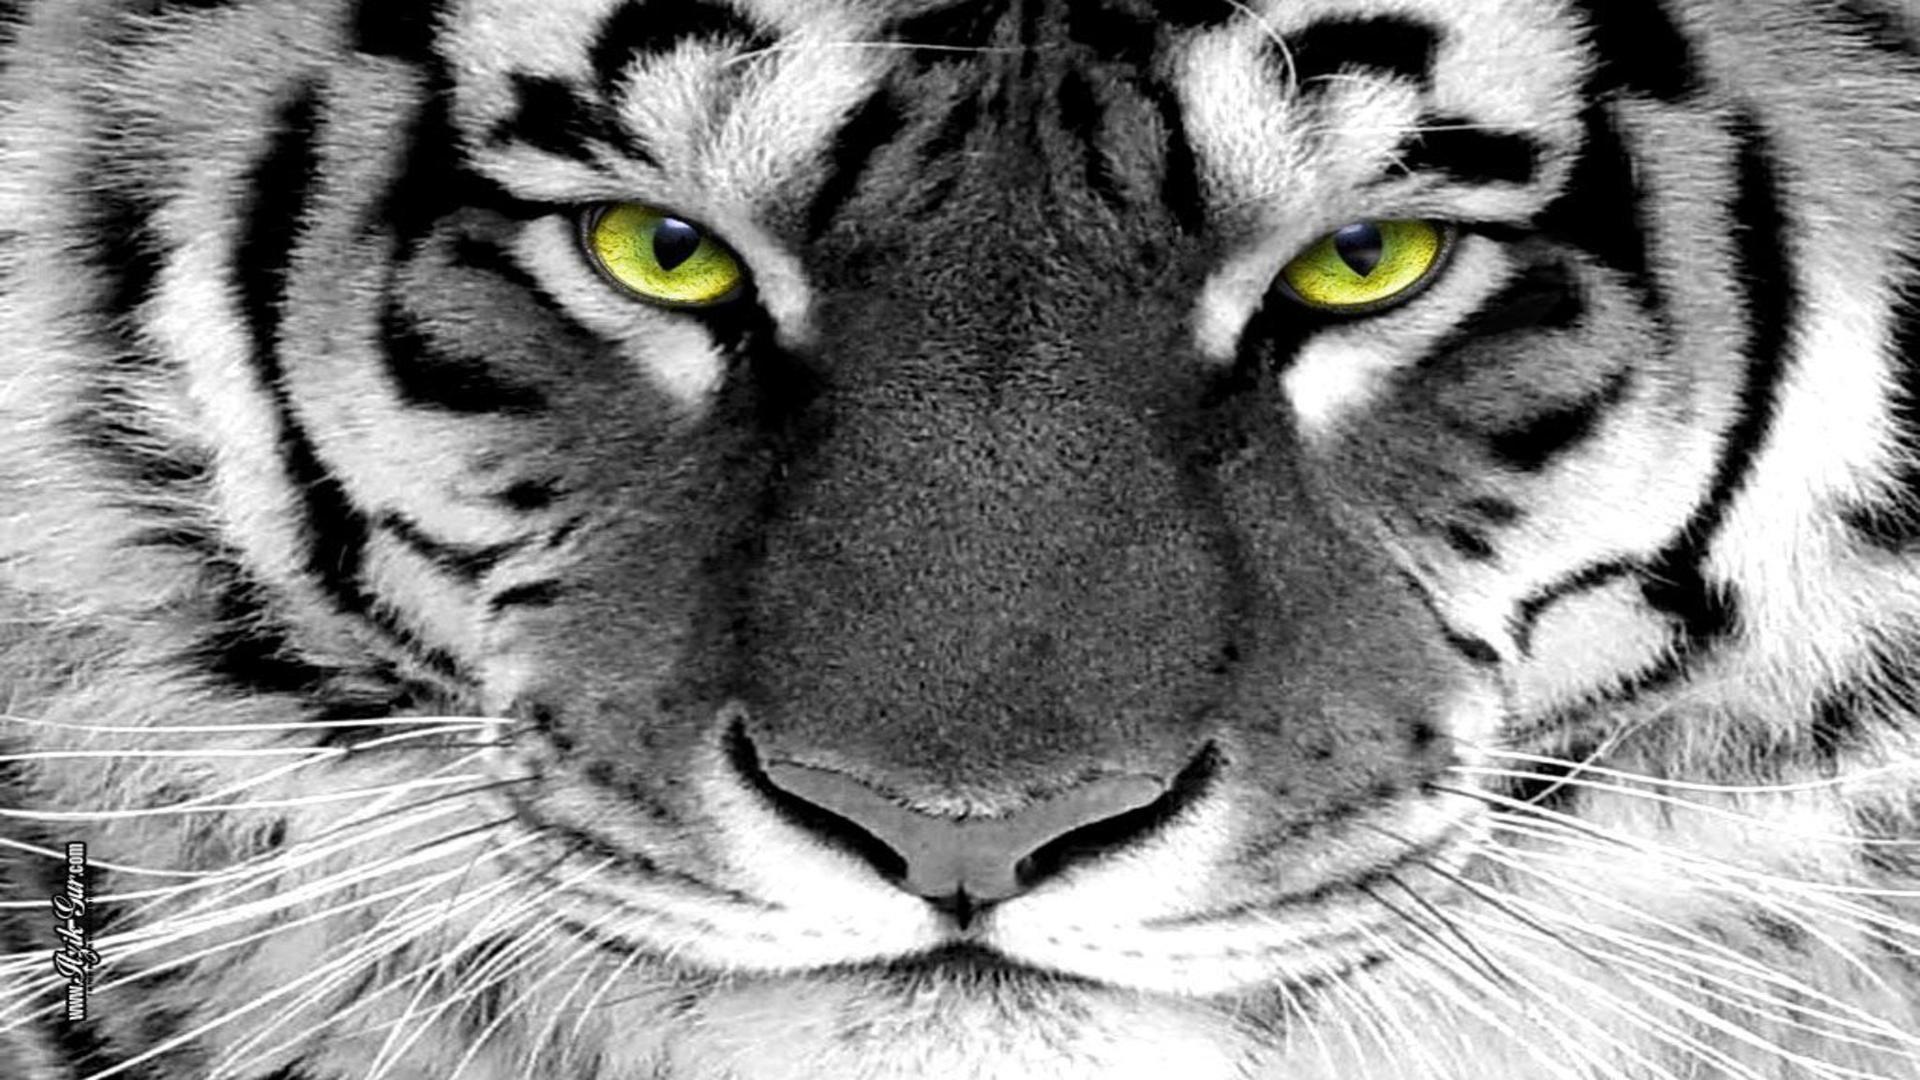 Tiger eyes green tiger eye white tiger free desktop background ...